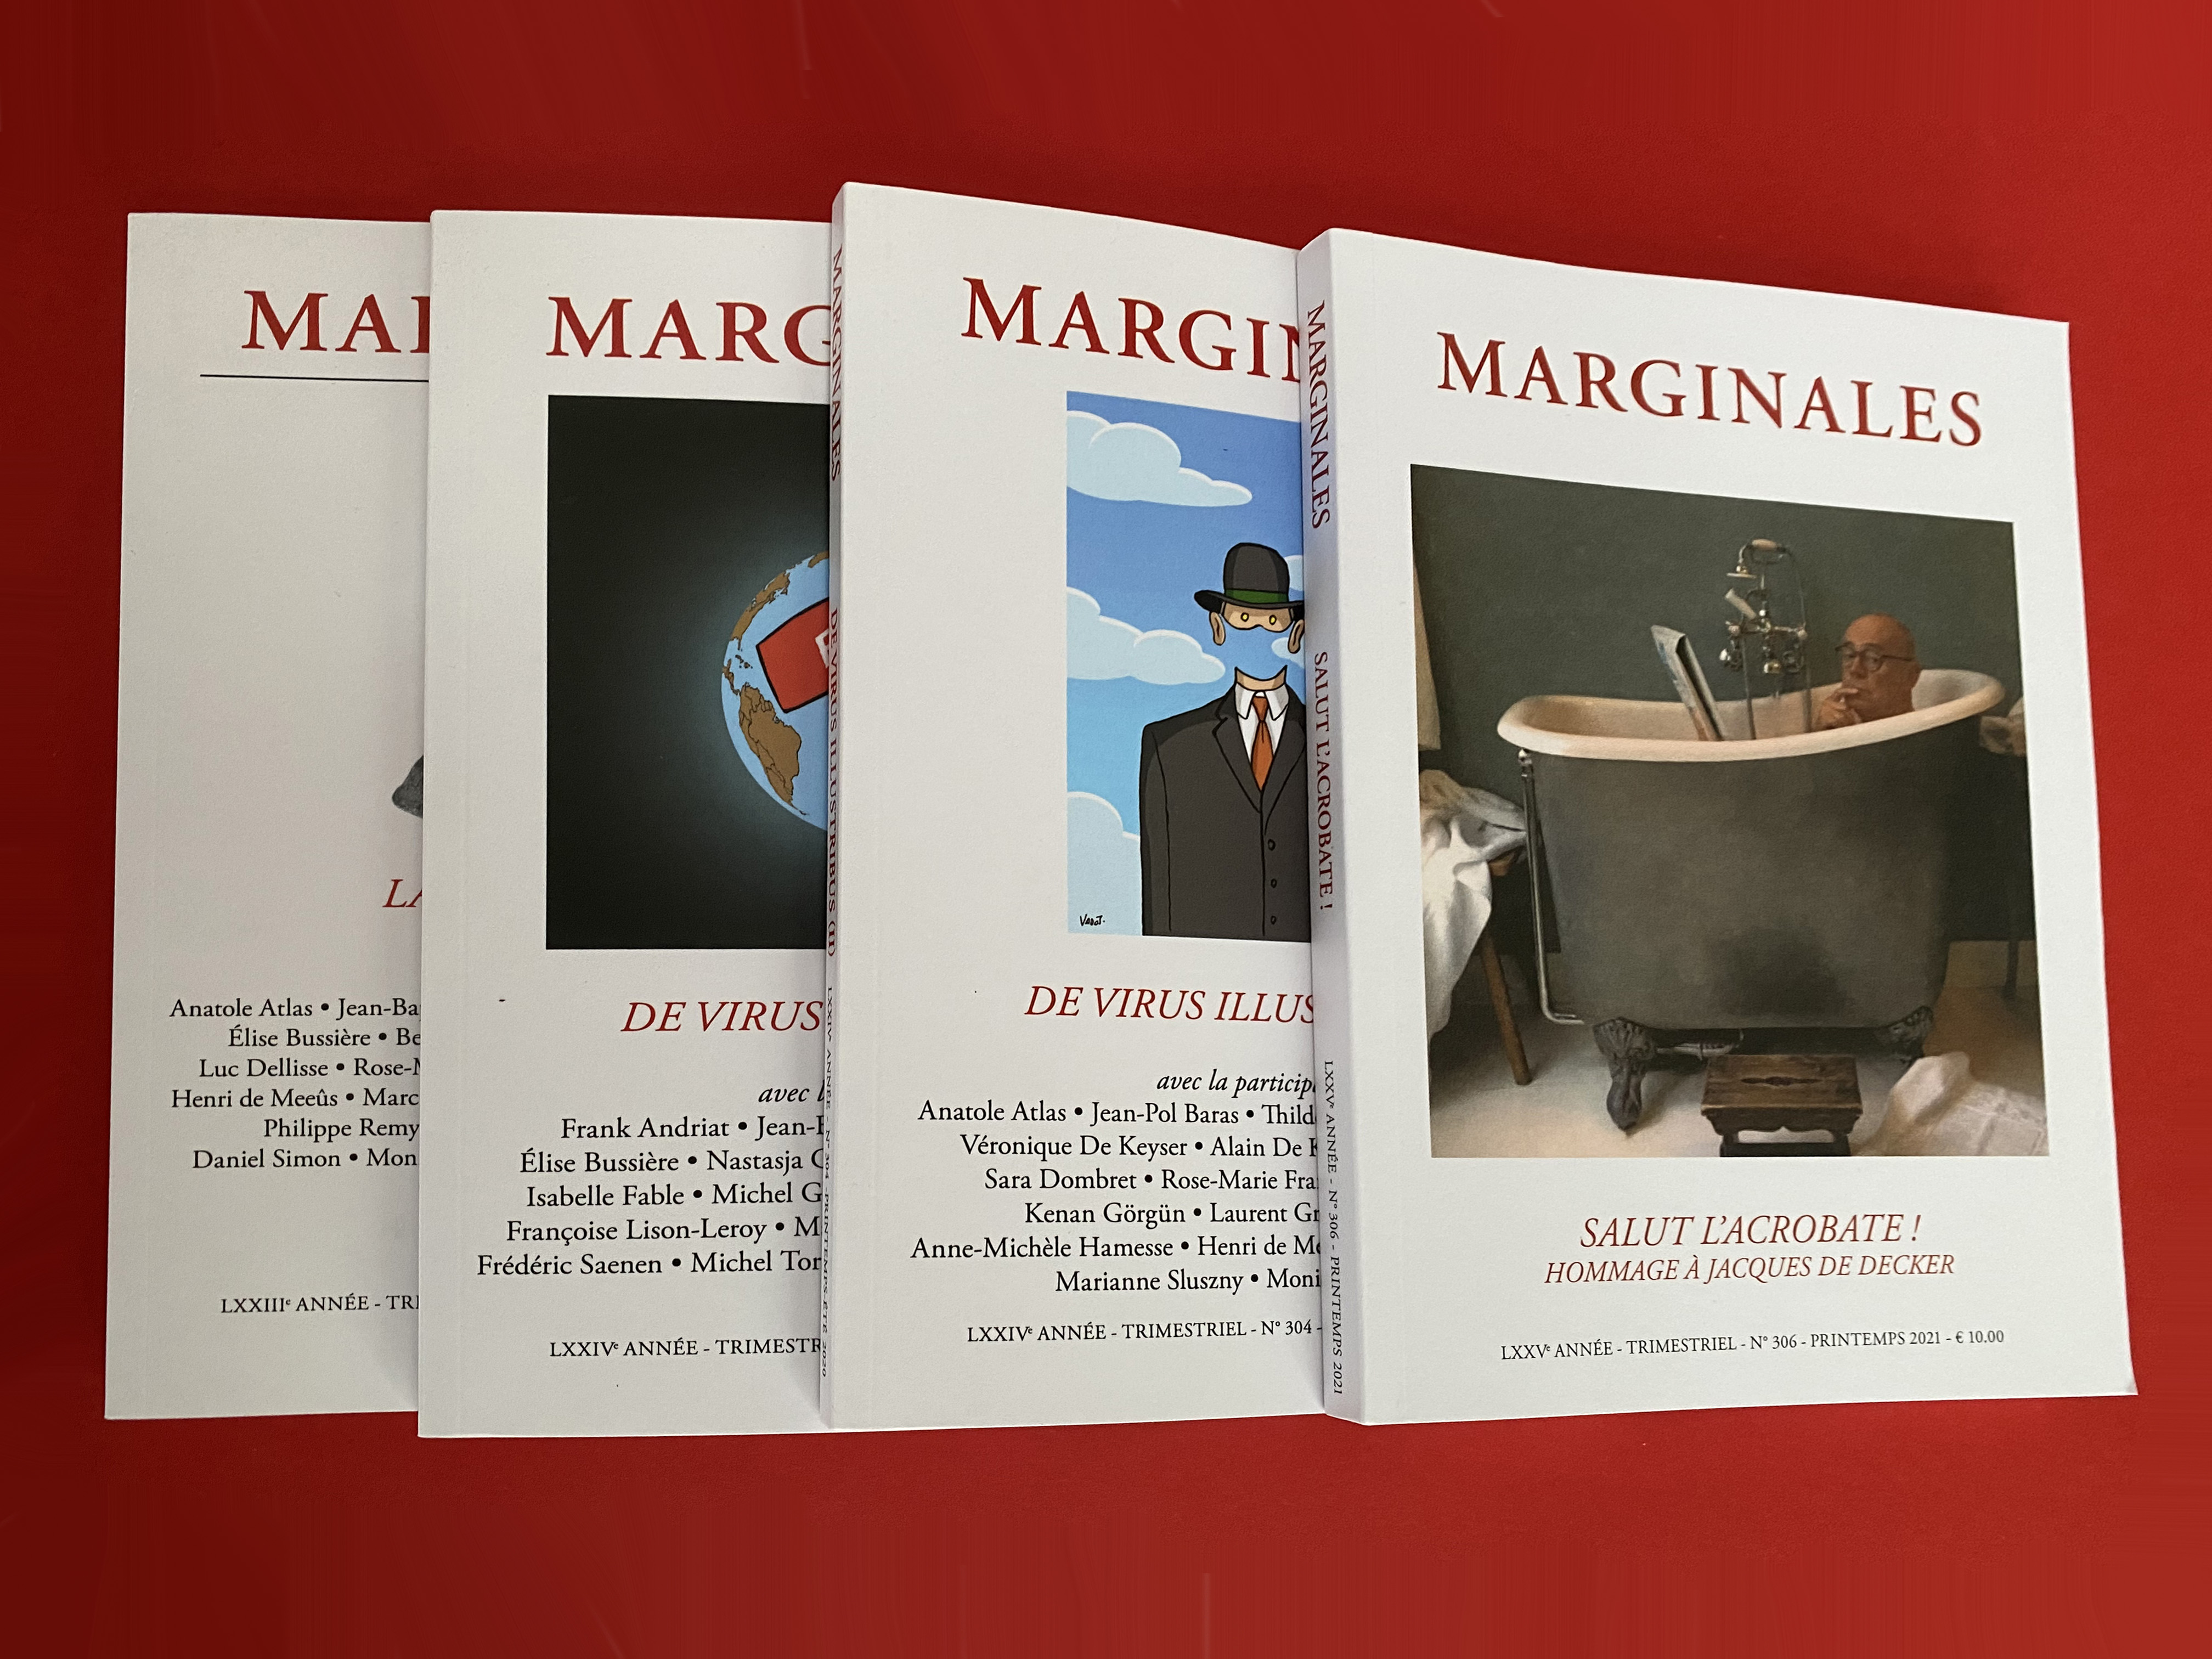 Marginales, une revue belge consacrée à la nouvelle